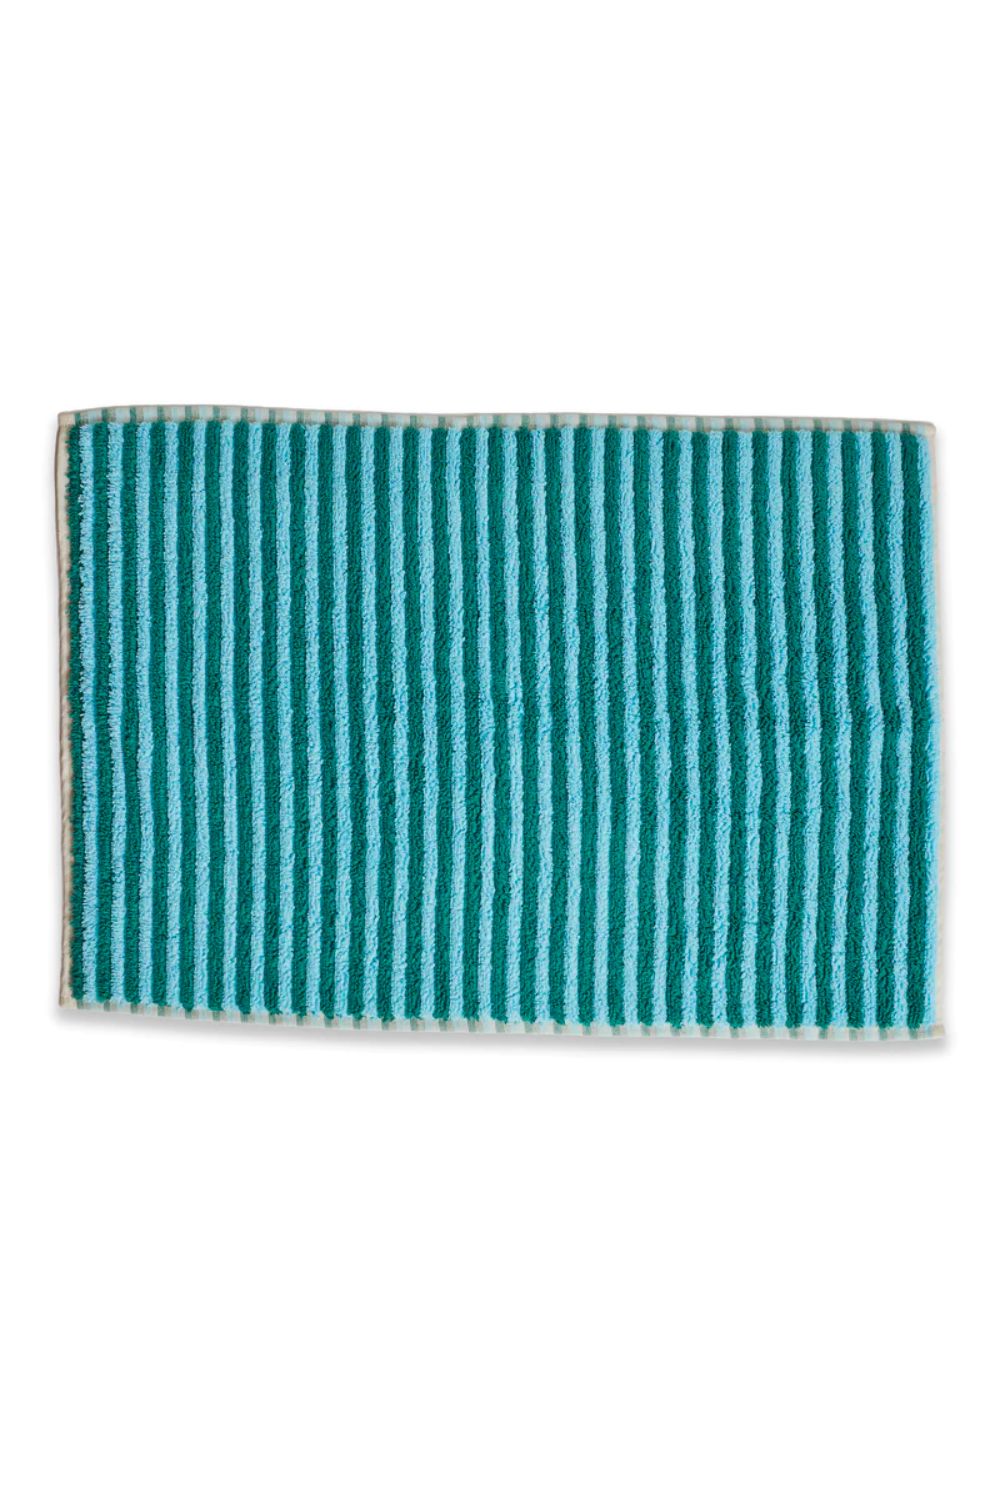 Sailor Stripe turkish bath mat